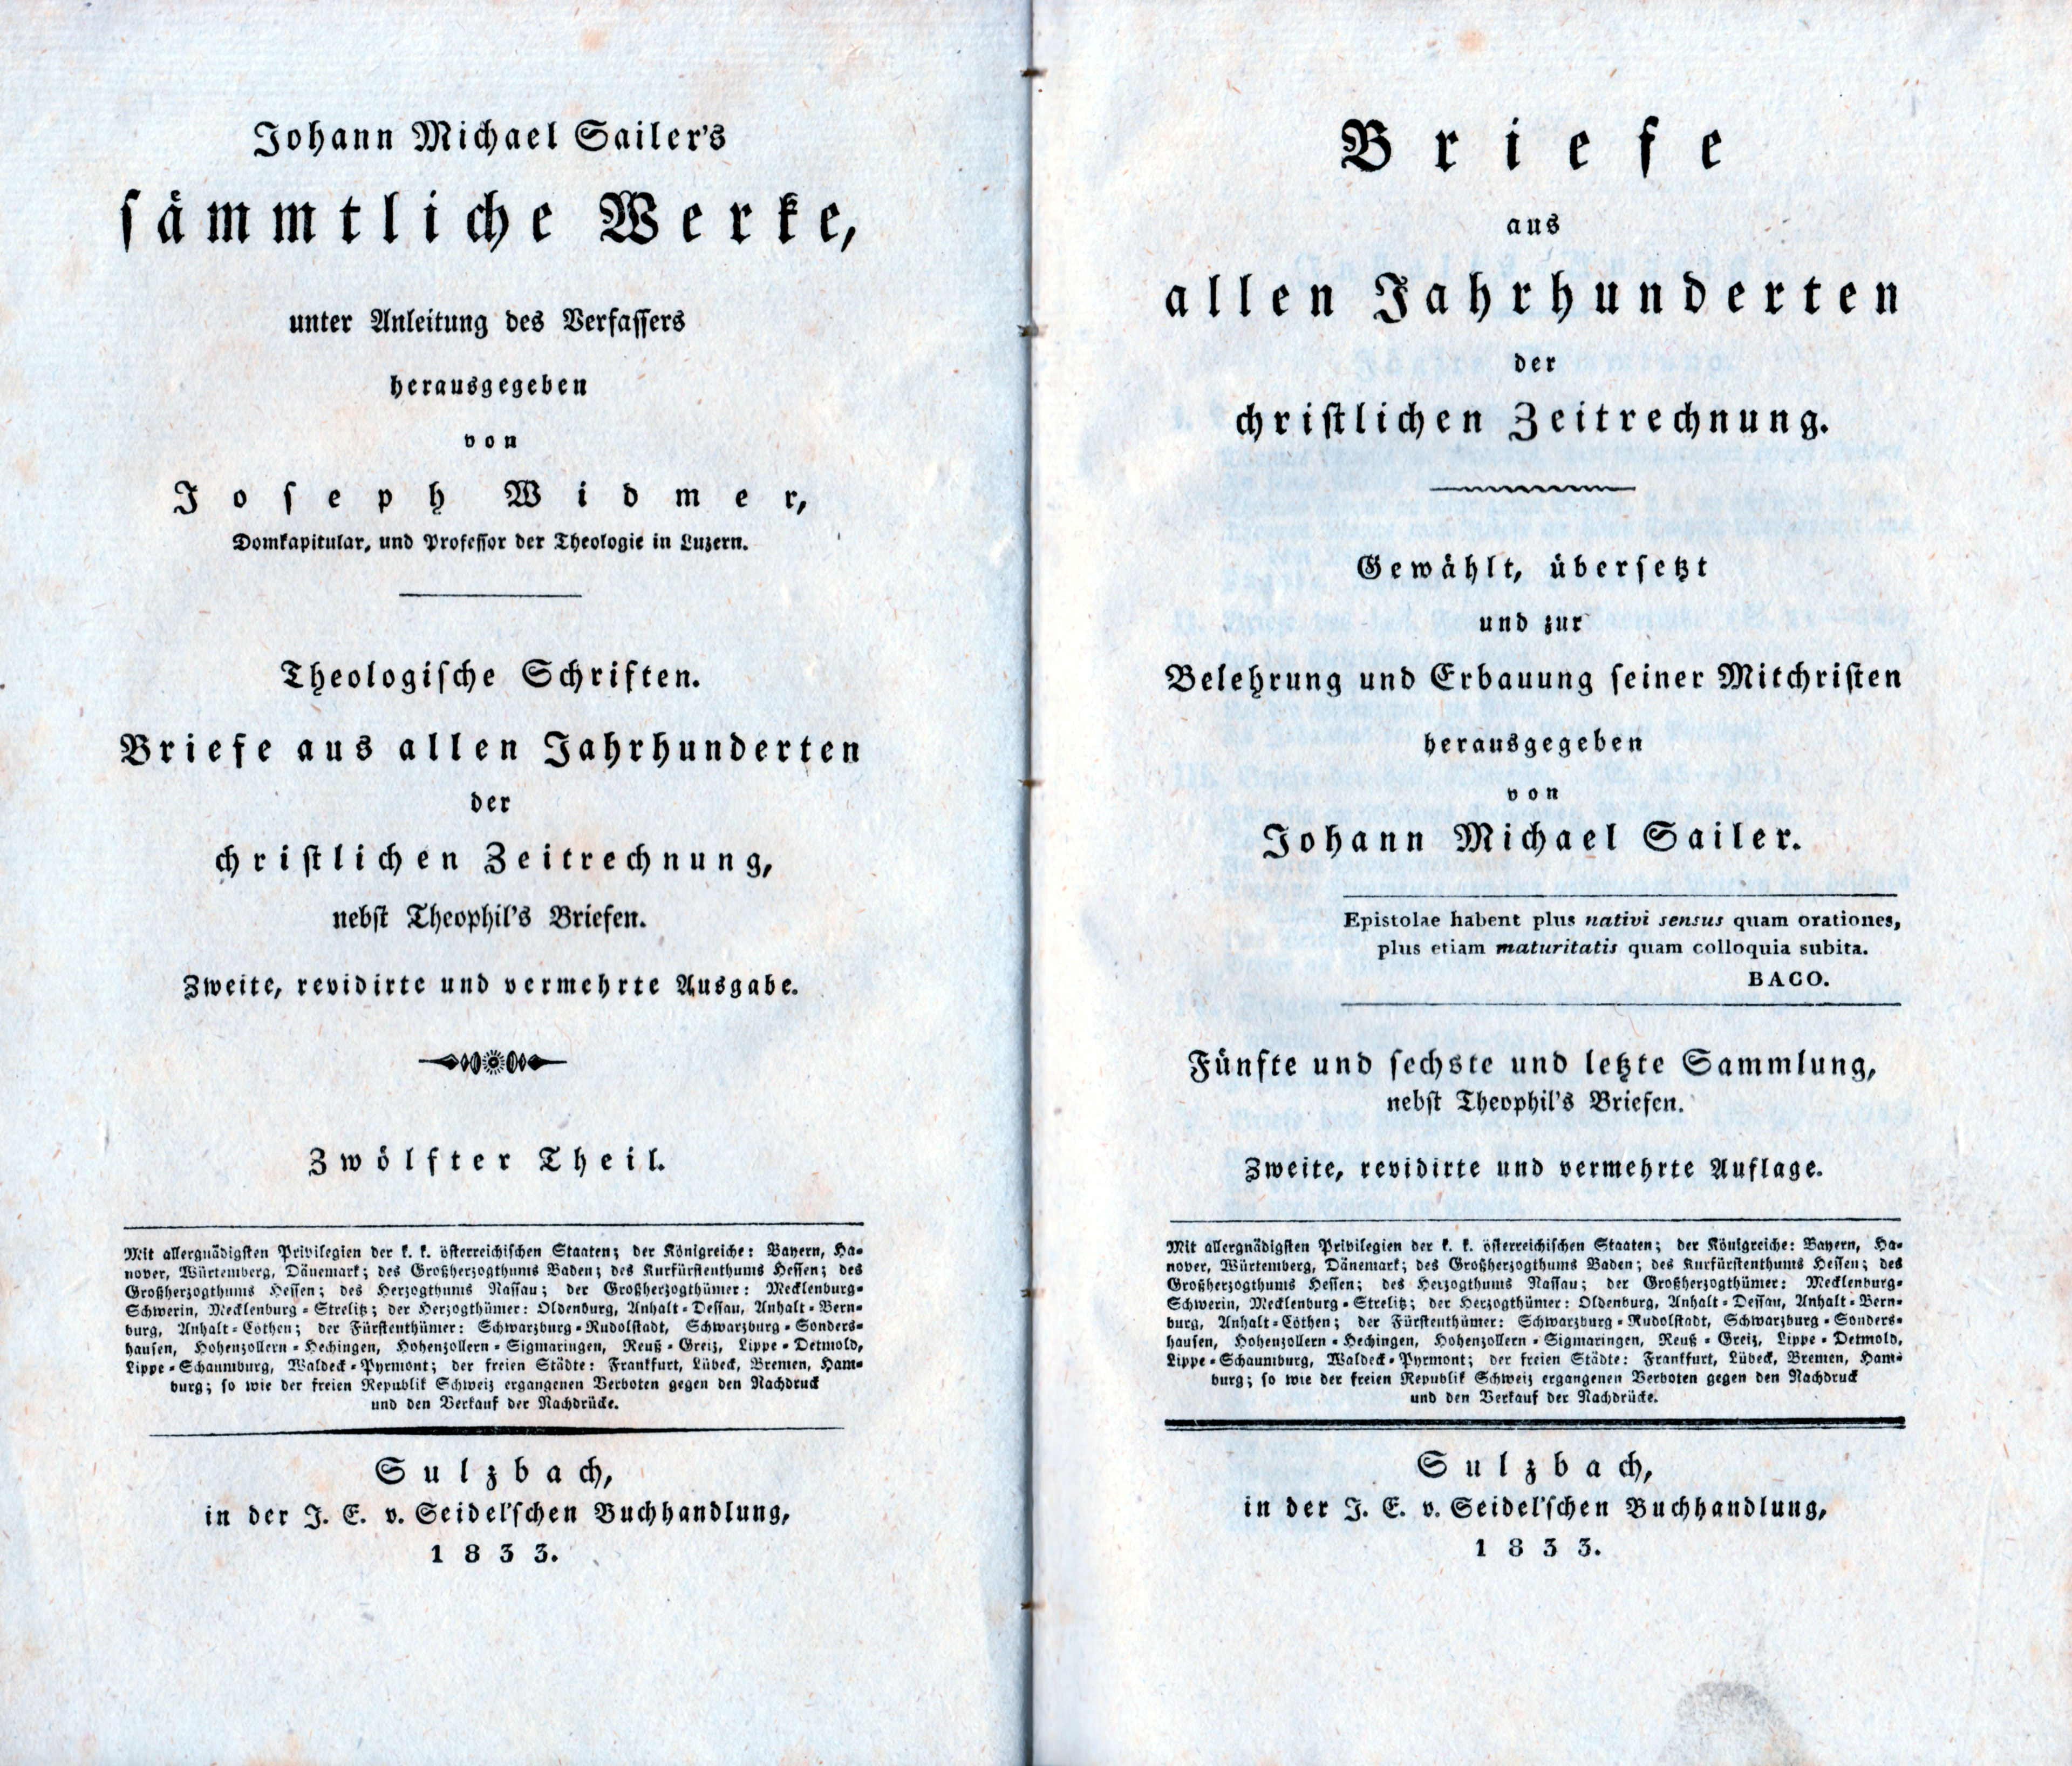 Briefe aus allen Jahrhunderten von Johann Michael Sailer, 1853 (Schloß Wernigerode GmbH RR-F)